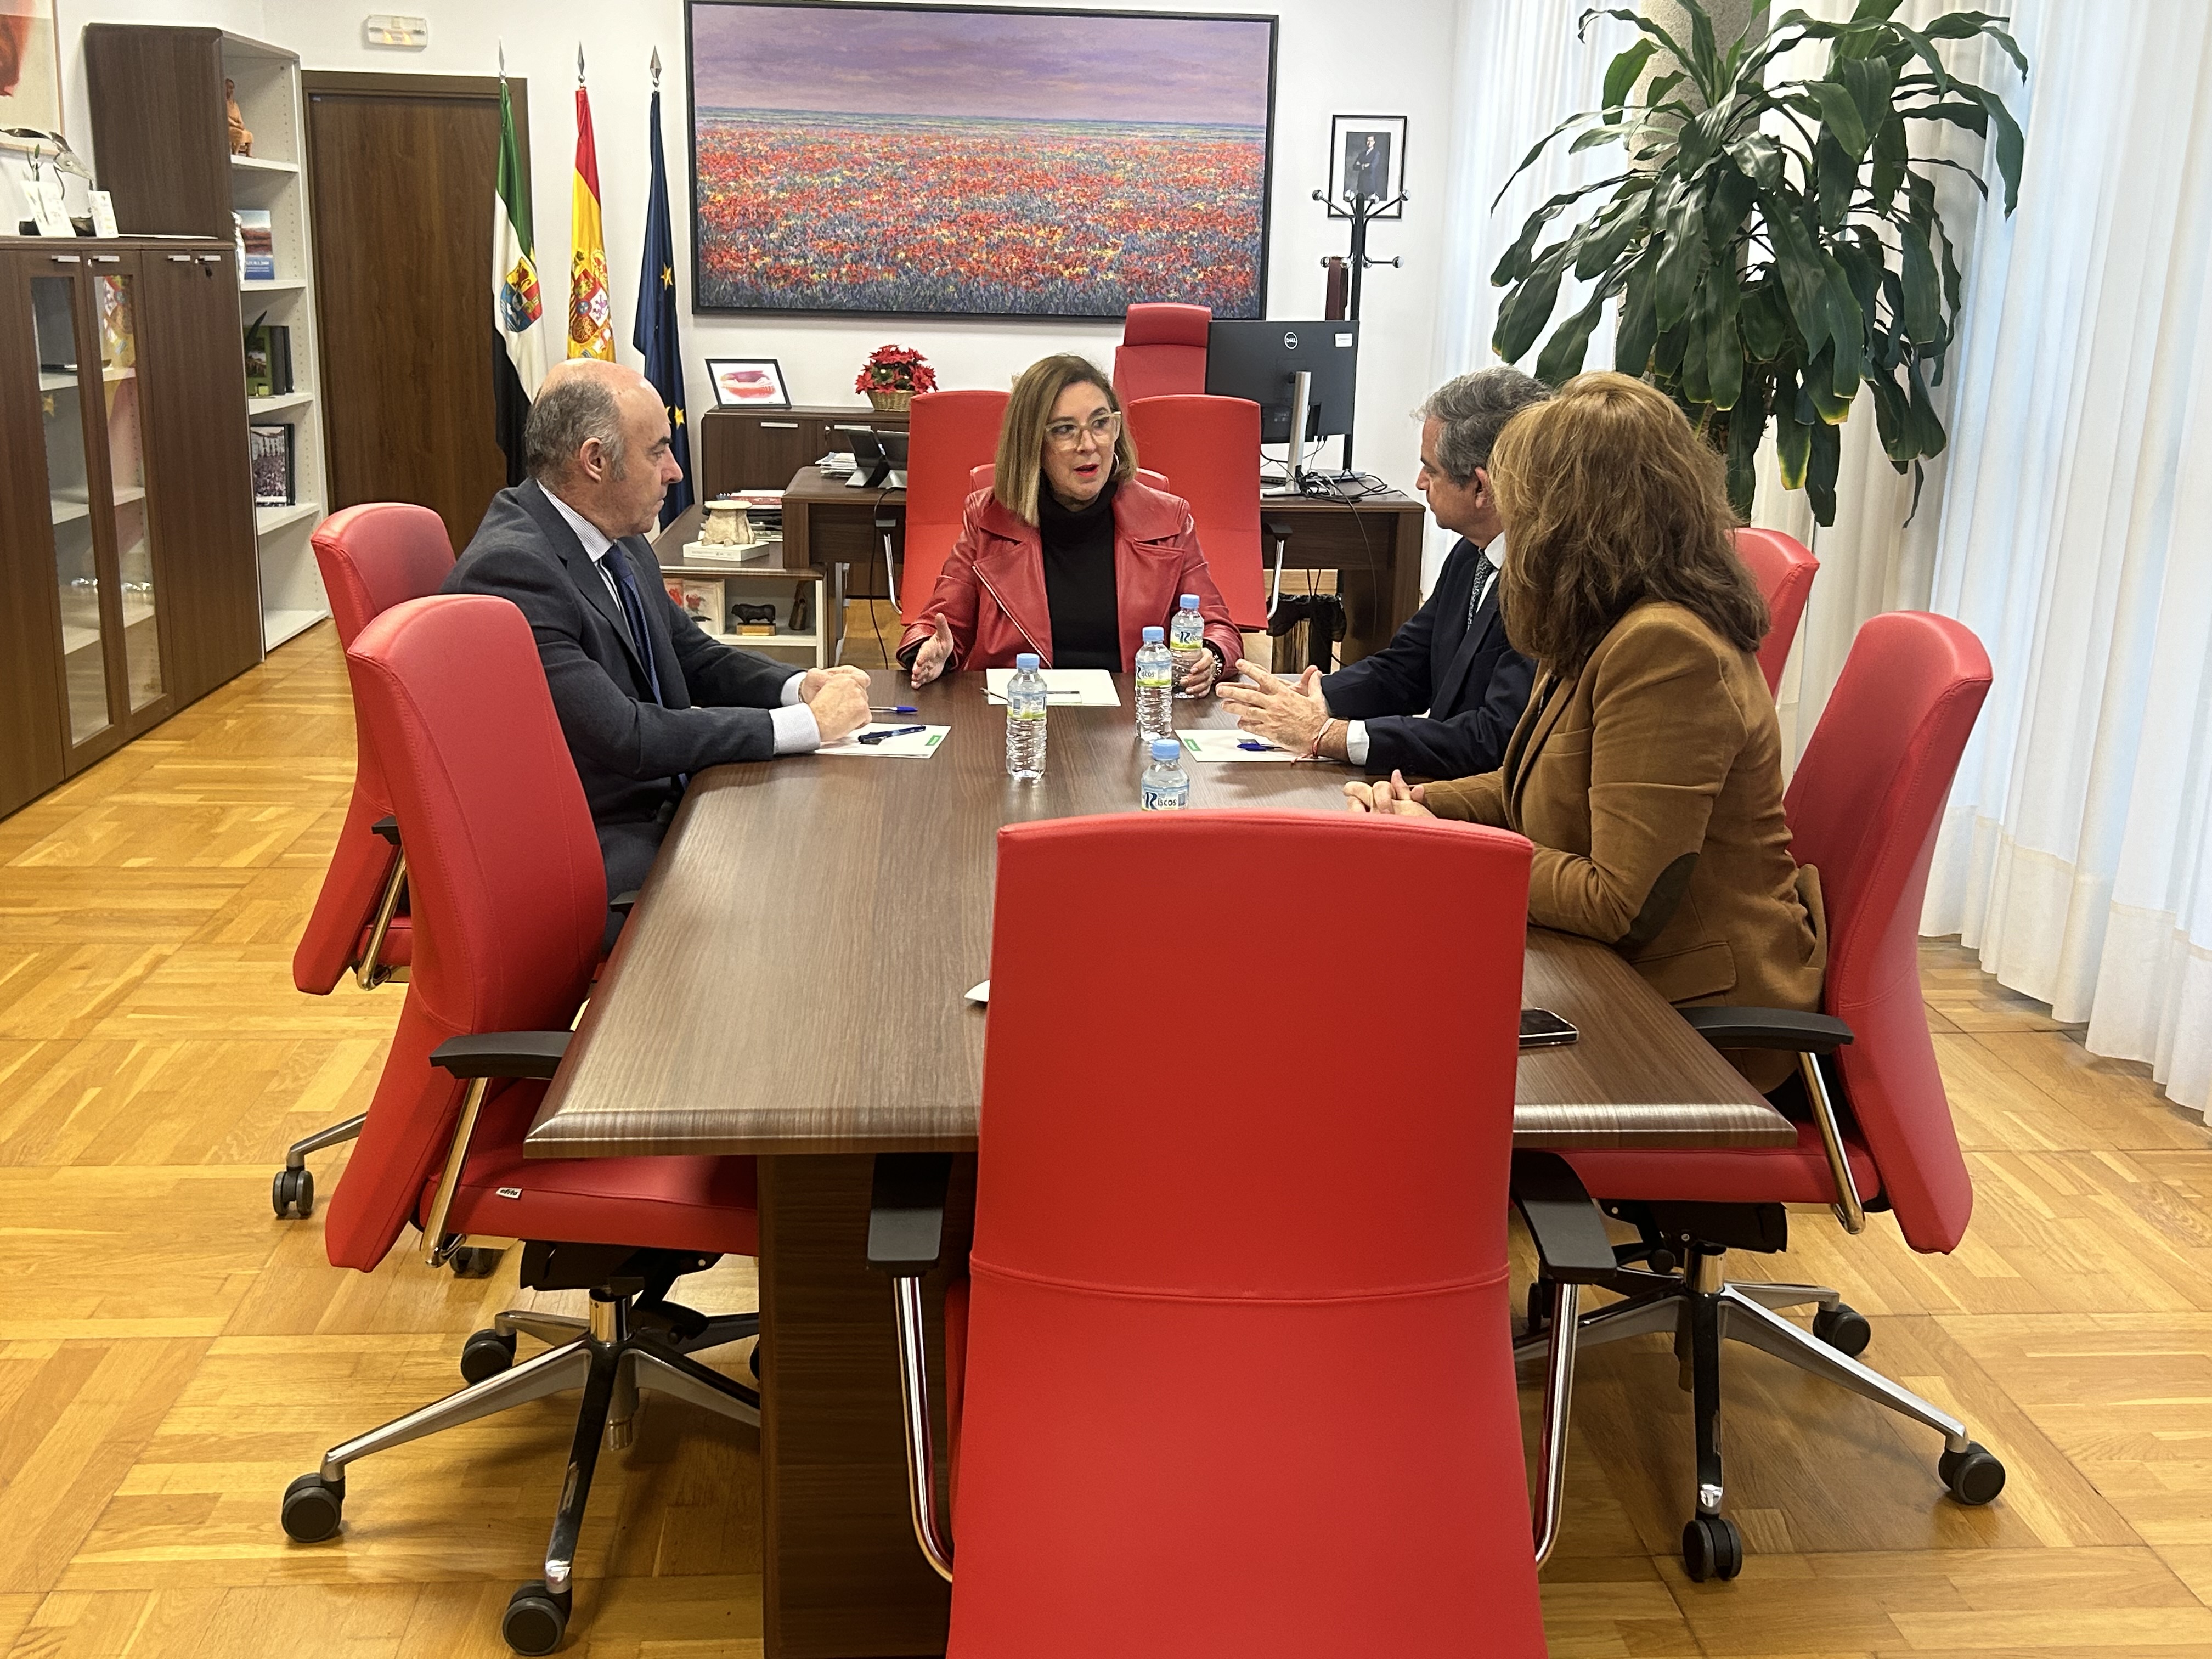 Image 2 of article La Junta concede 4,5 millones a las Cámaras de Comercio de Badajoz y Cáceres para desarrollar programas de competencias digitales en zonas rurales